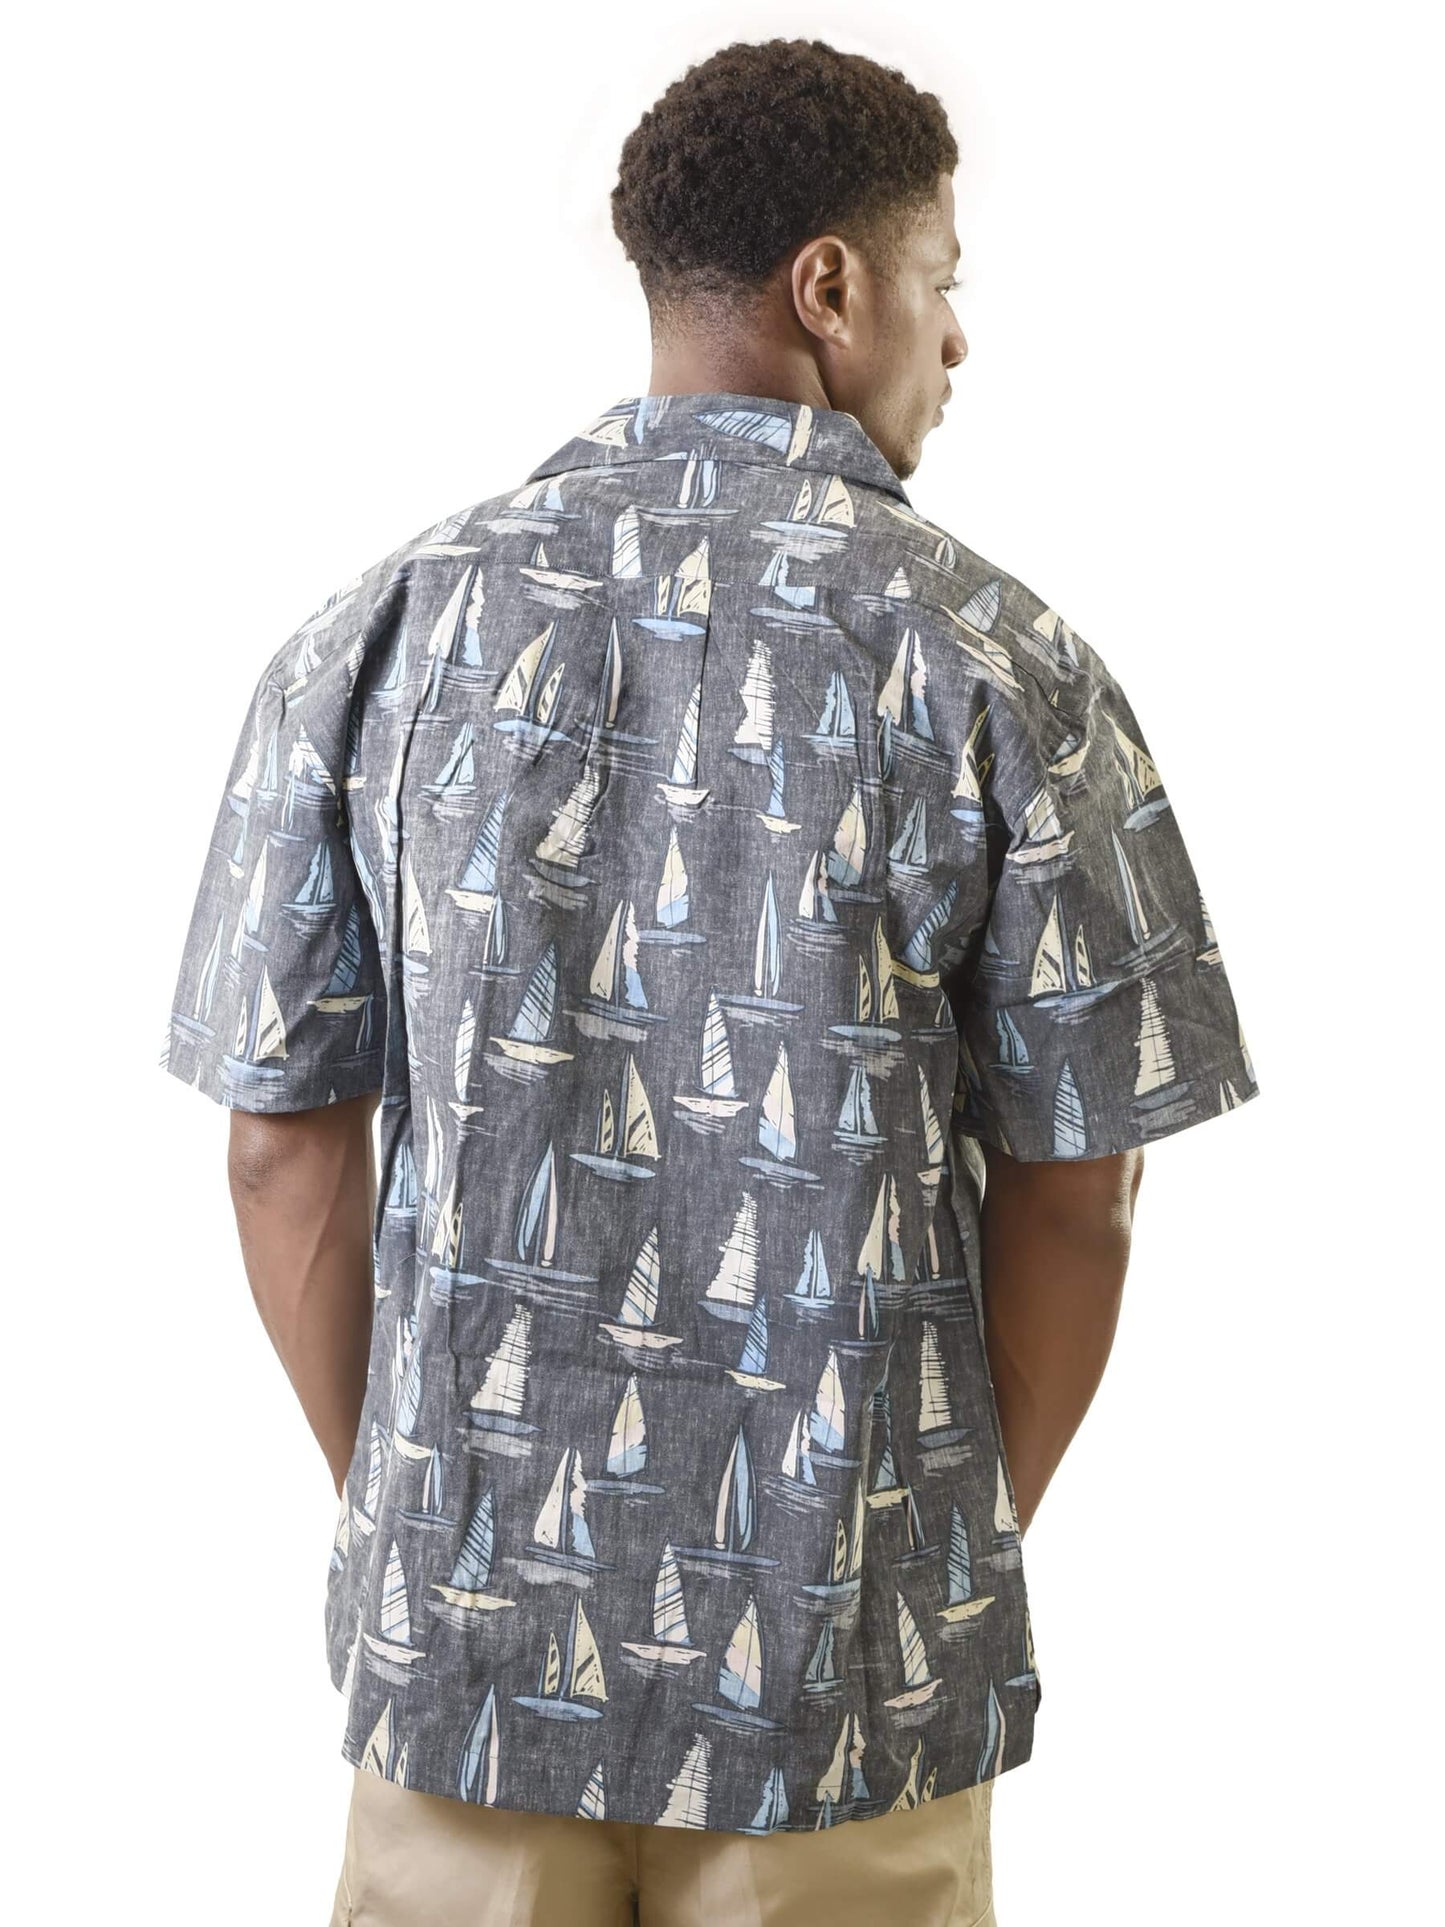 Men's Hawaiian Shirt, Sail Boat